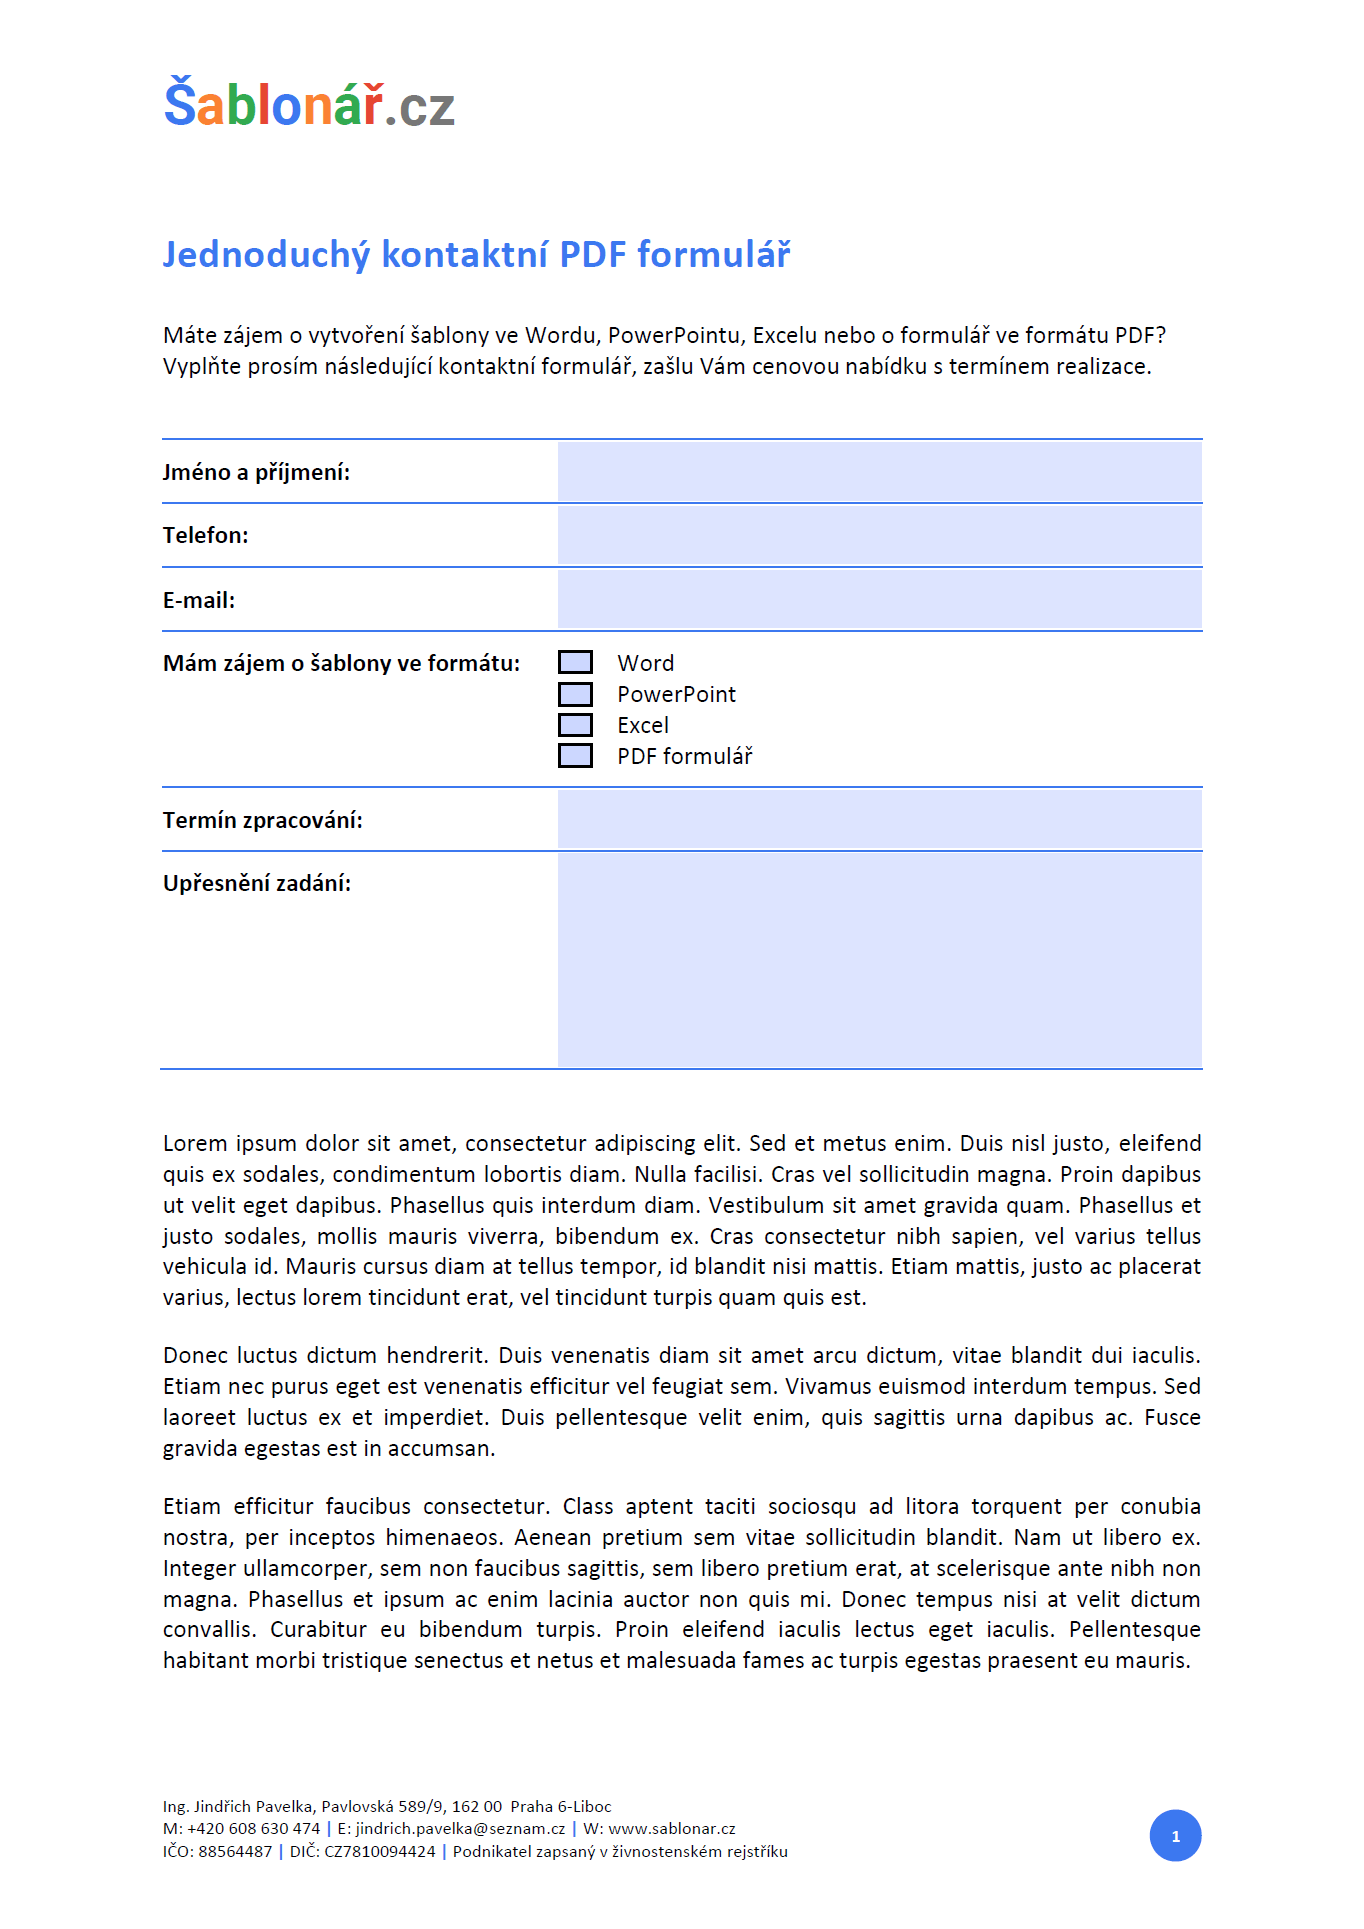 Formulář v PDF